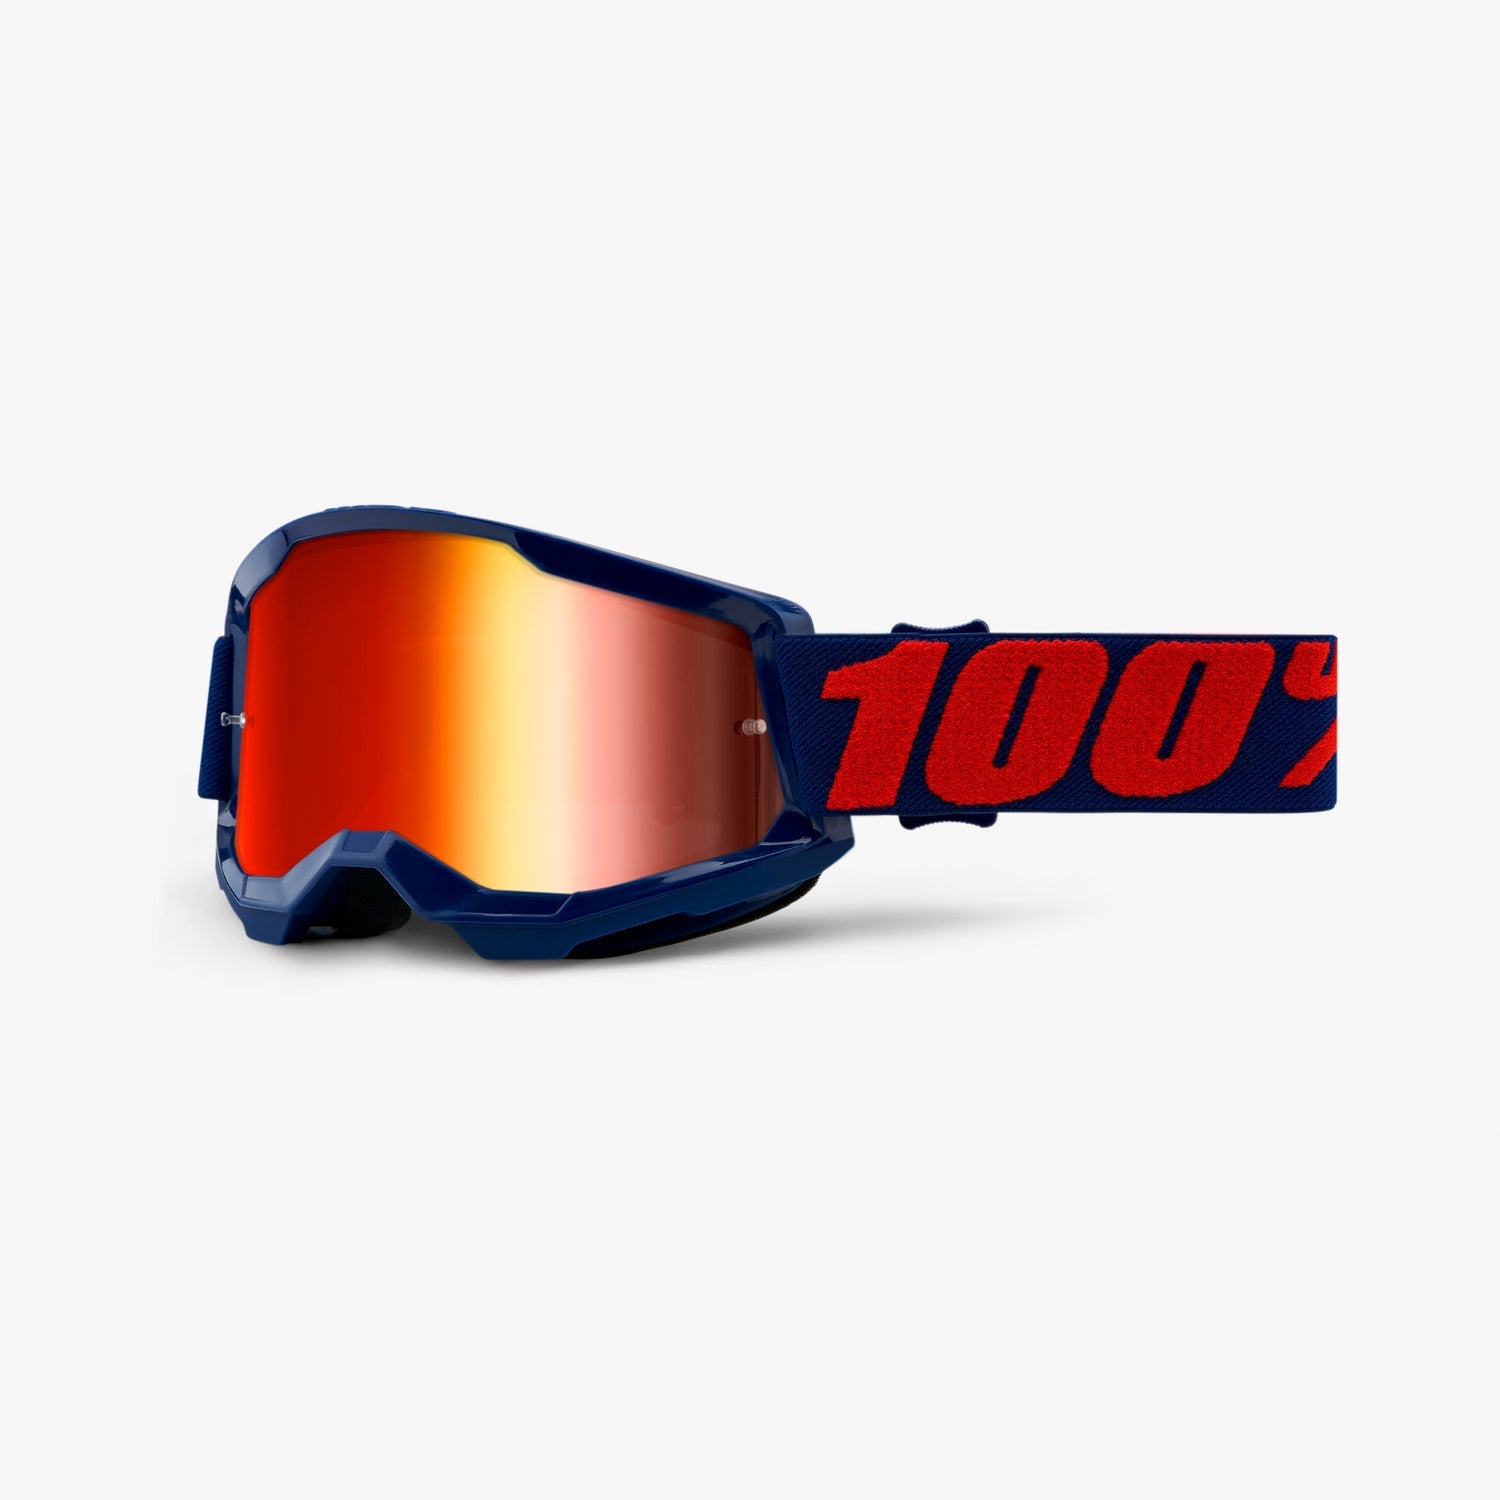 100% - Strata 2 Clear Goggles